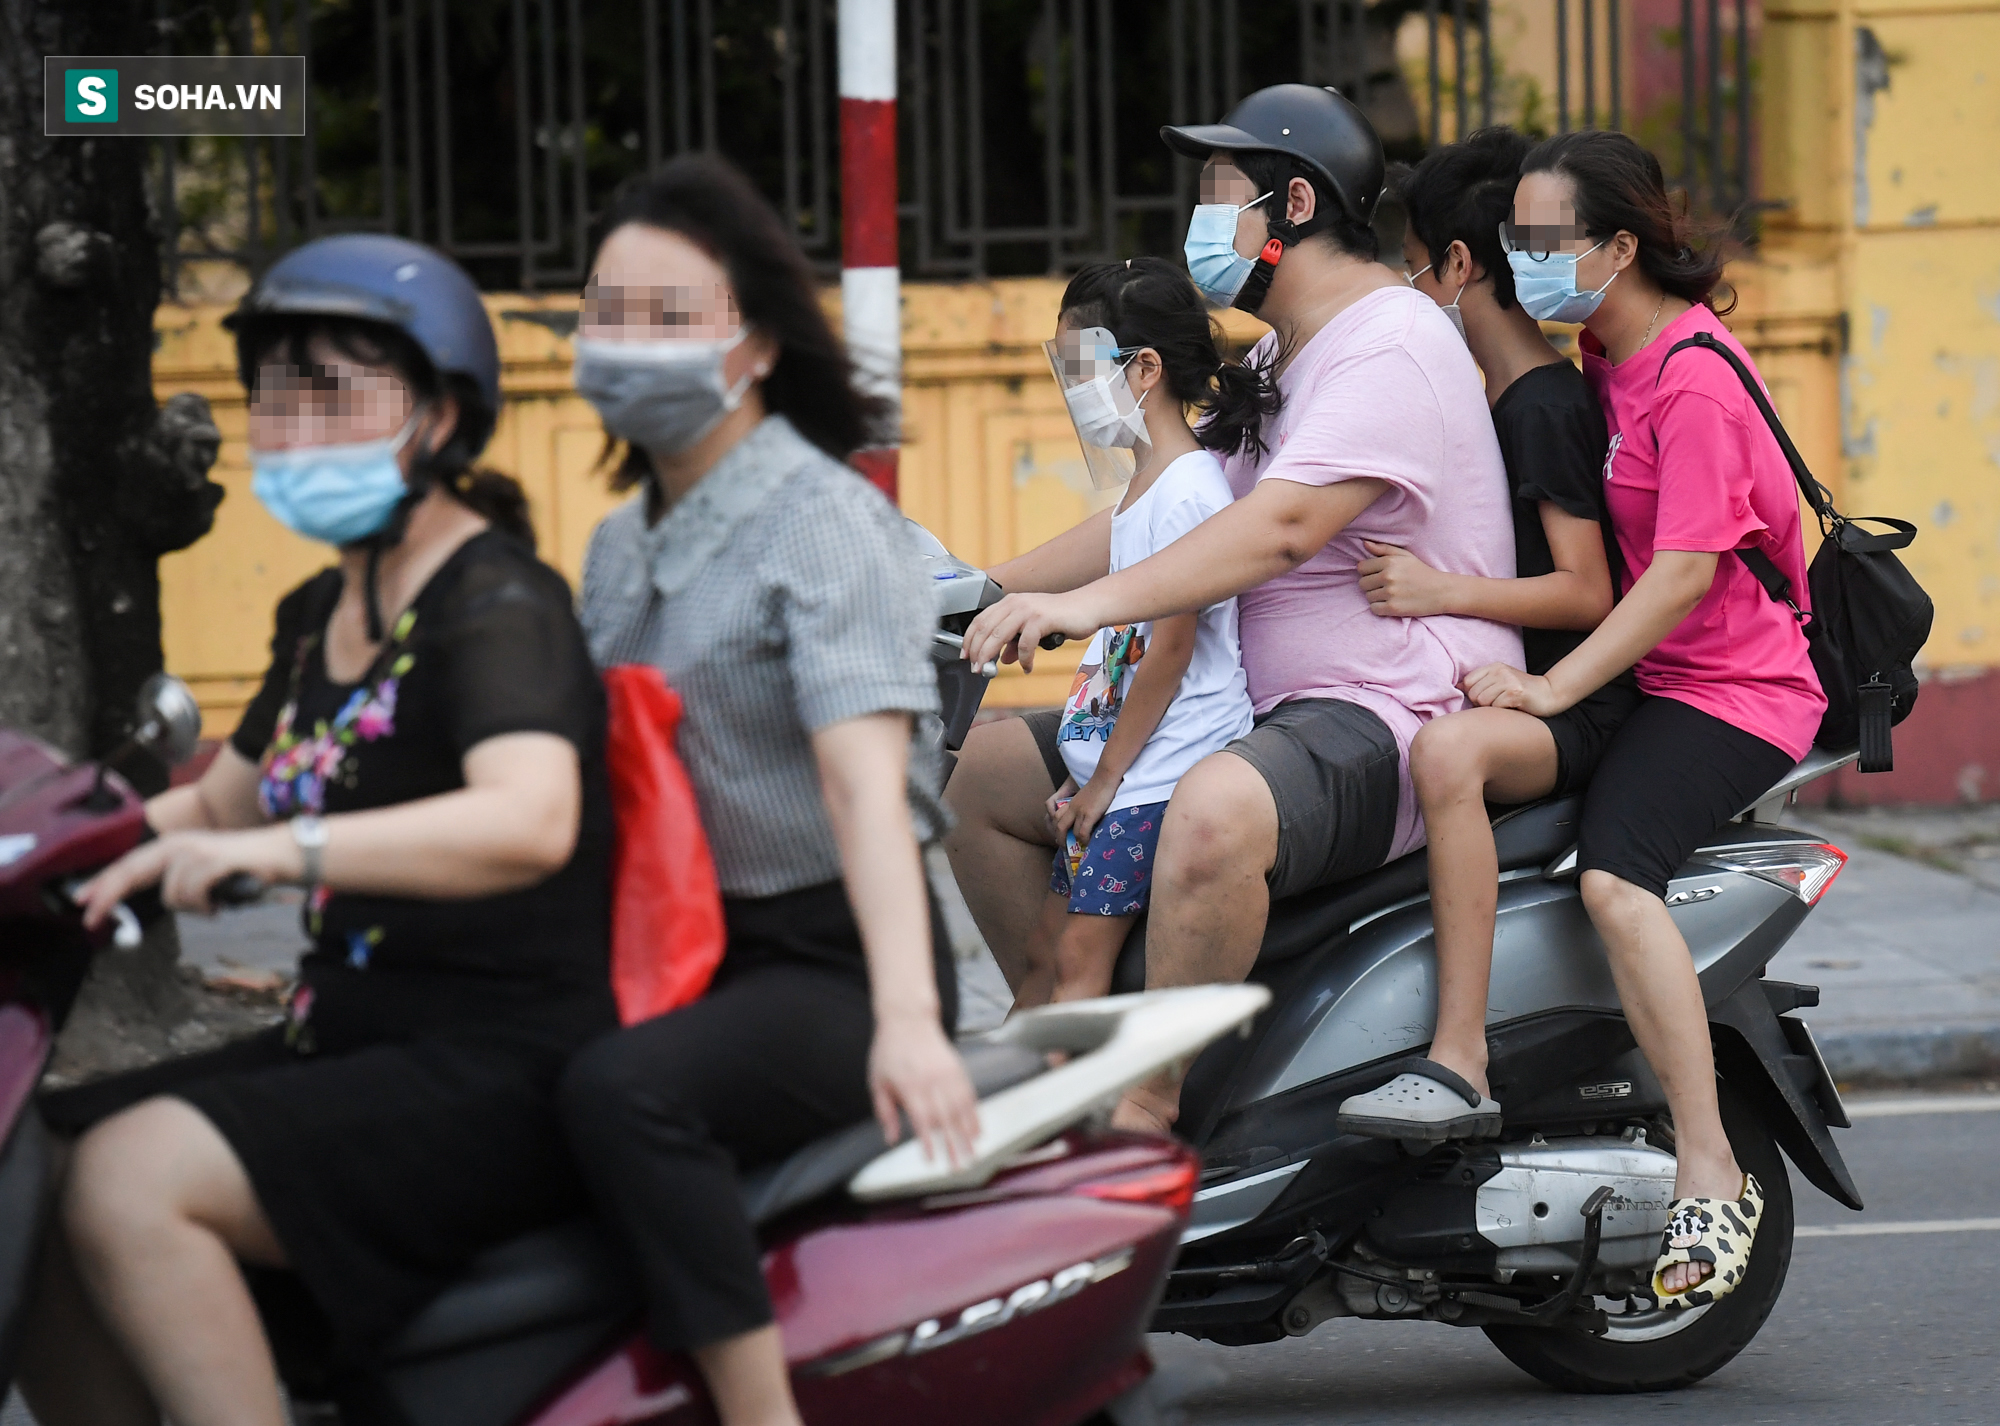 Ra đường mùa dịch: Nhiều người ở Hà Nội nhớ khẩu trang nhưng quên luật giao thông - Ảnh 6.